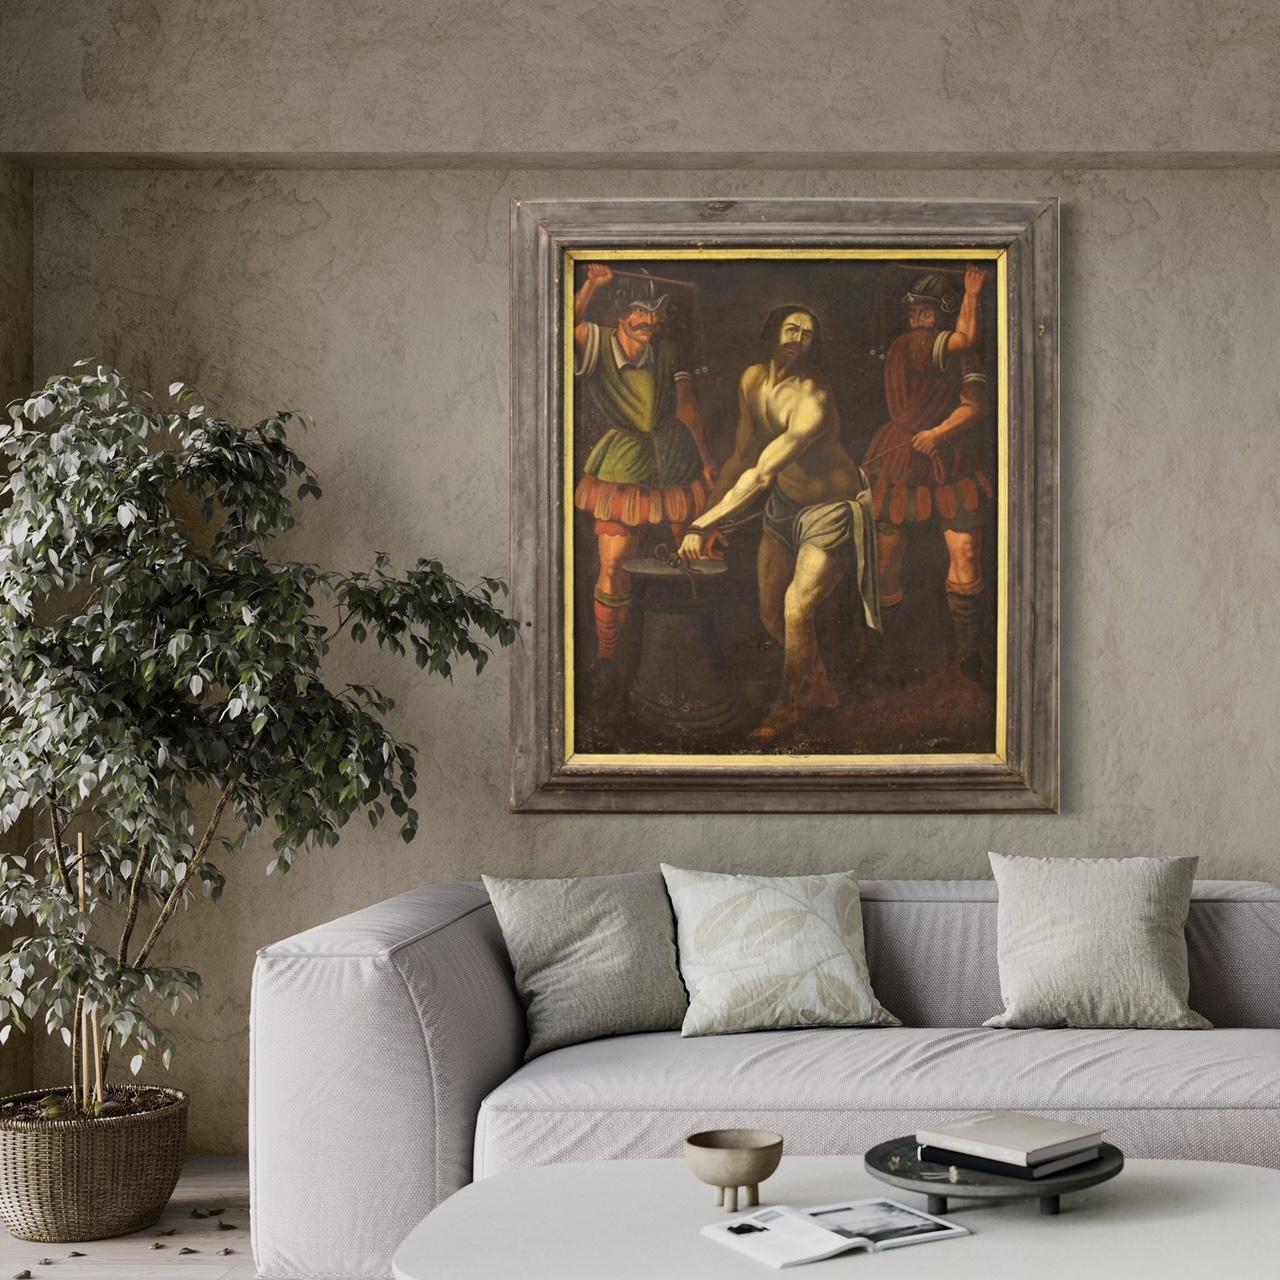 Großes italienisches Gemälde aus dem 17. Jahrhundert. Öl auf Leinwand mit einem Thema der sakralen Kunst, der Geißelung Jesu an der Säule, für Antiquitätenhändler und Sammler hochepochaler religiöser Gemälde. Gemälde von ausgezeichneter malerischer